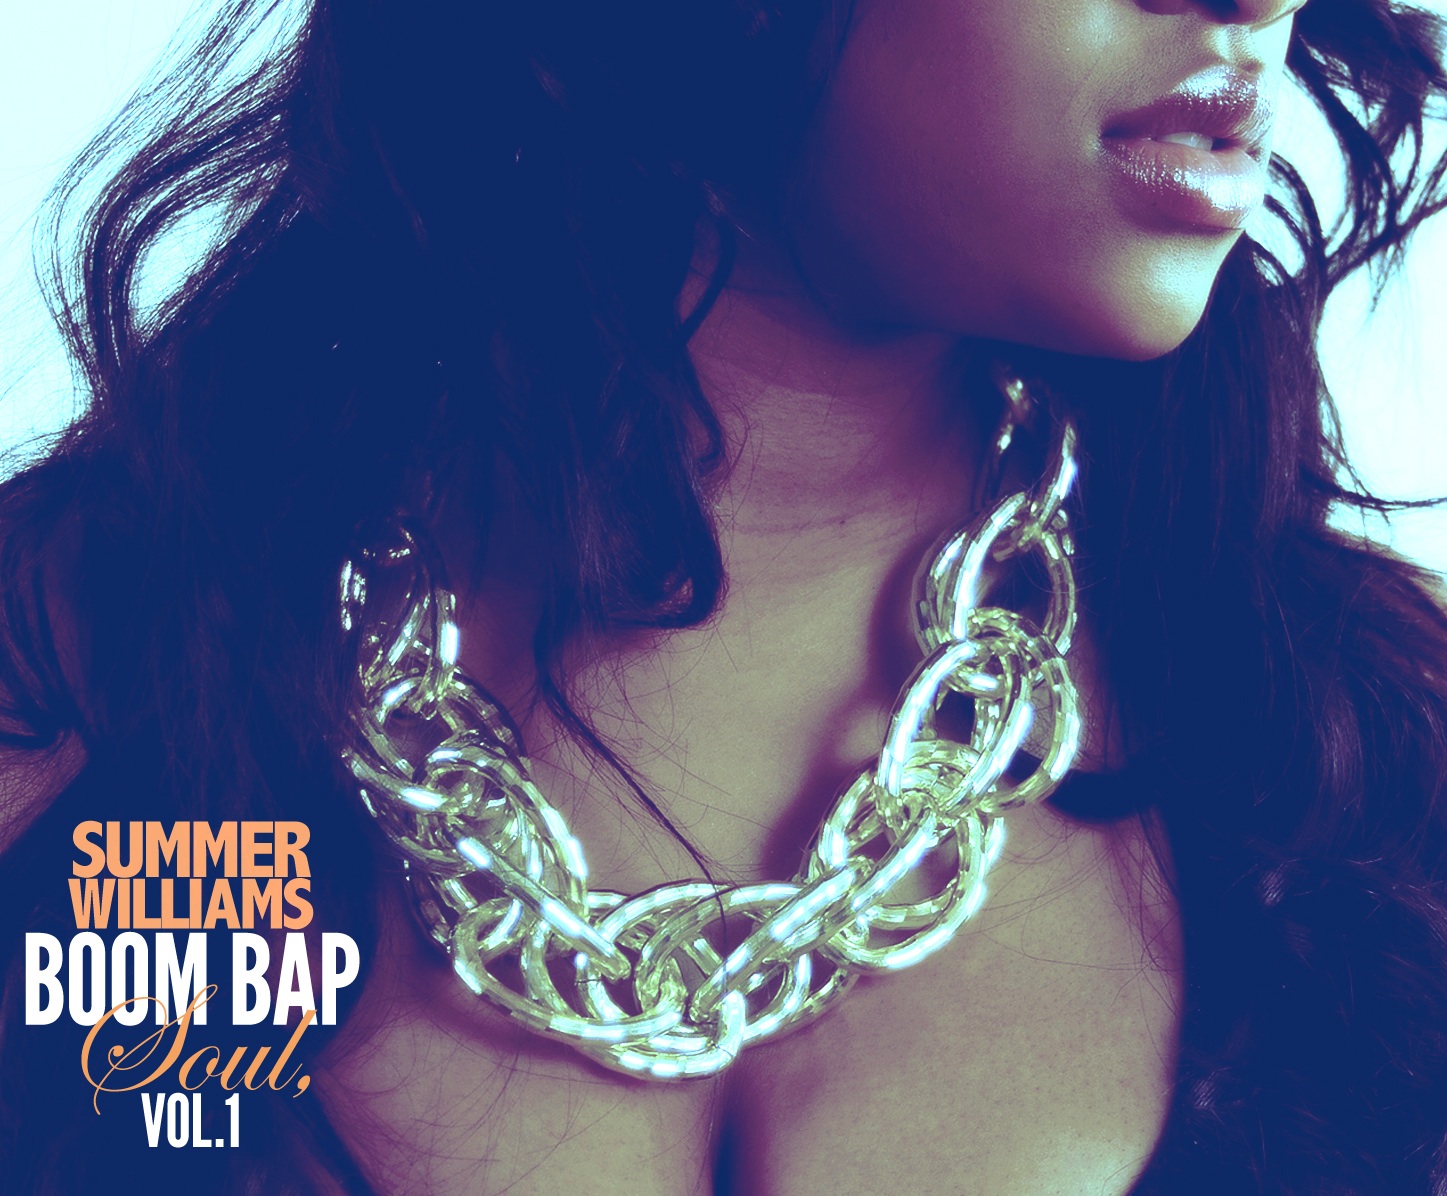 New Mixtape: Summer Williams "Boom Bap Soul Vol.1"